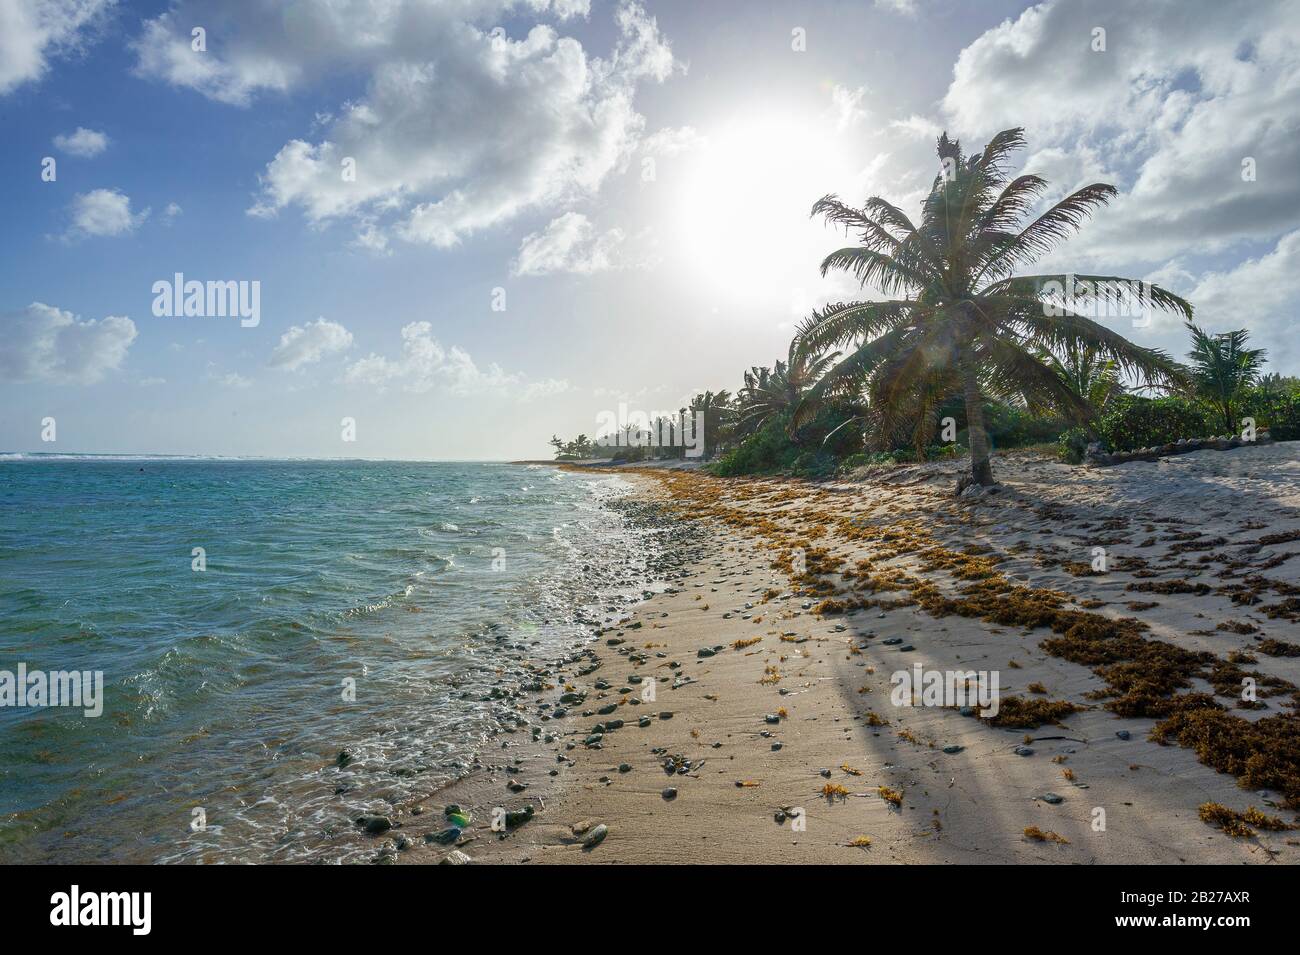 Paisible plage, île Grand Cayman Banque D'Images